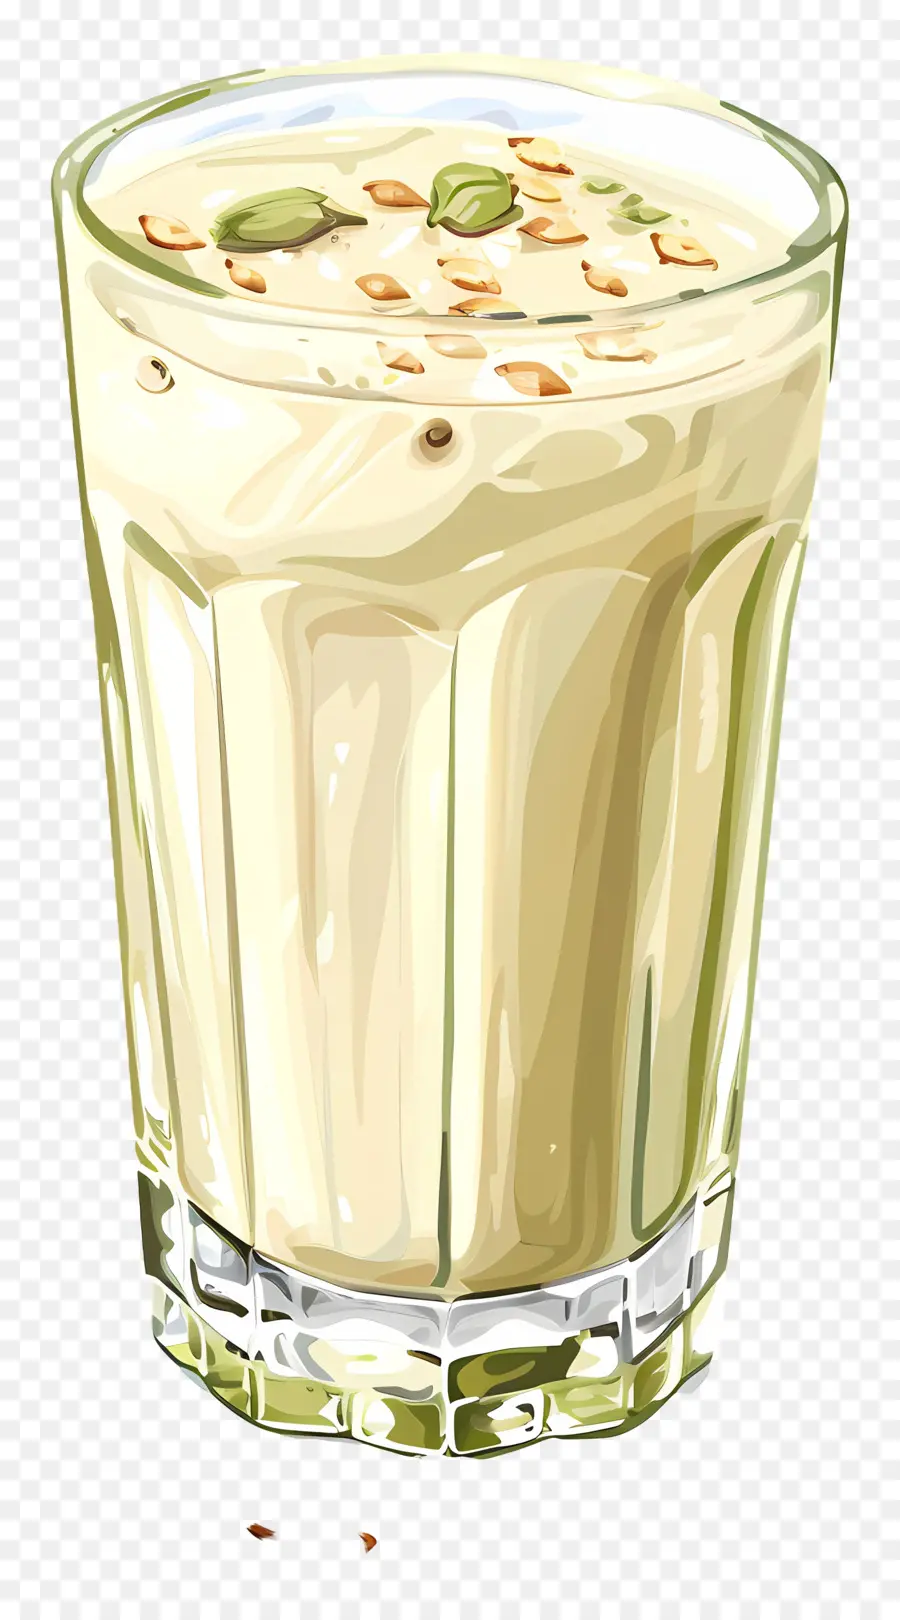 Thandai Drink Smoothie Glass Creamy Seeds - Bicchiere di frullato cremoso con semi/noci